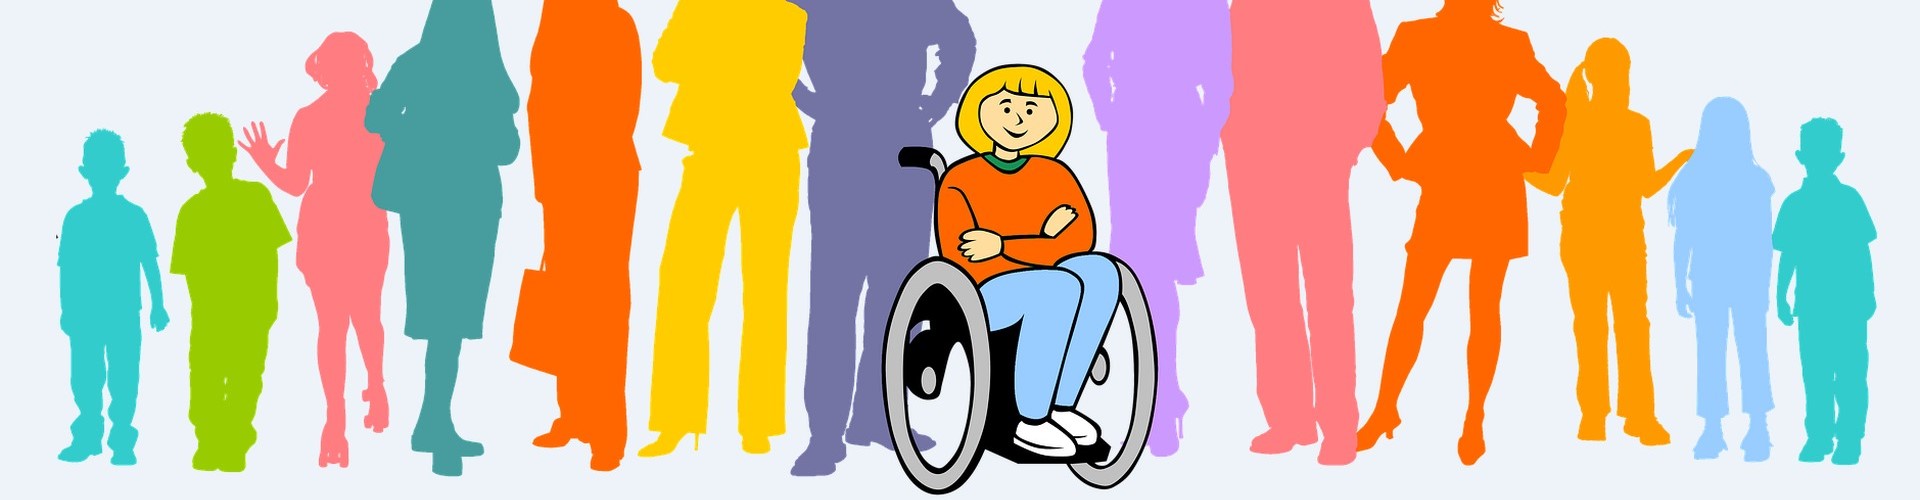 Bunte Darstellung von Menschen in einer Reihe, in der Mitte befindet sich ein Rollstuhlfahrer.